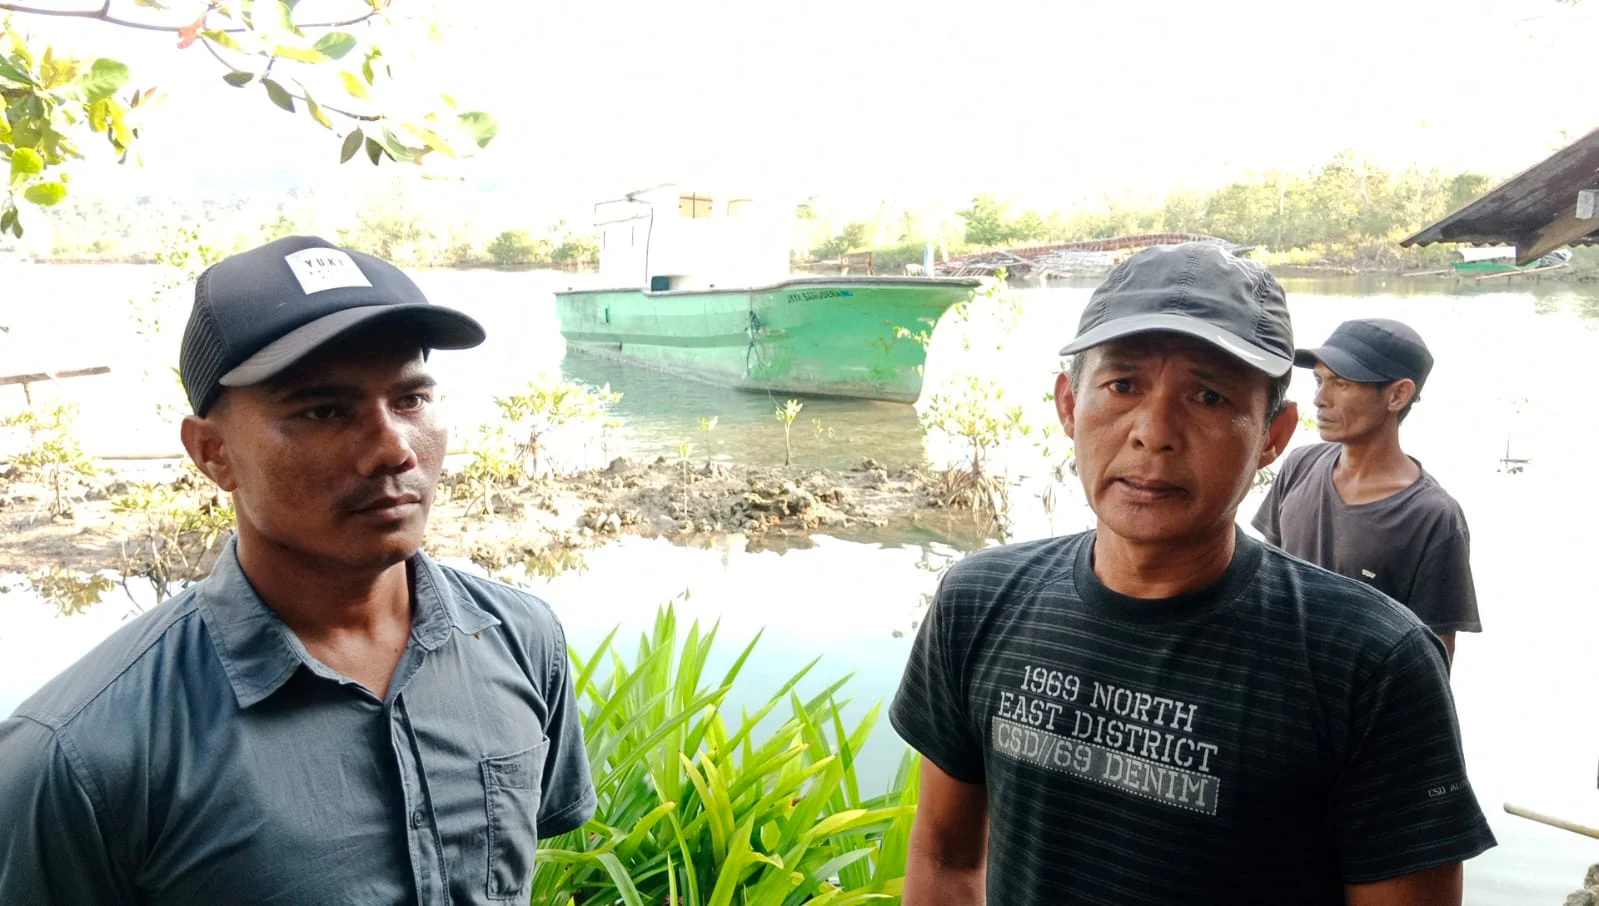 Masyarakat Kecewa Atas Pengelolaan Kapal Bumdes Suka Jaya Tidak Transparan